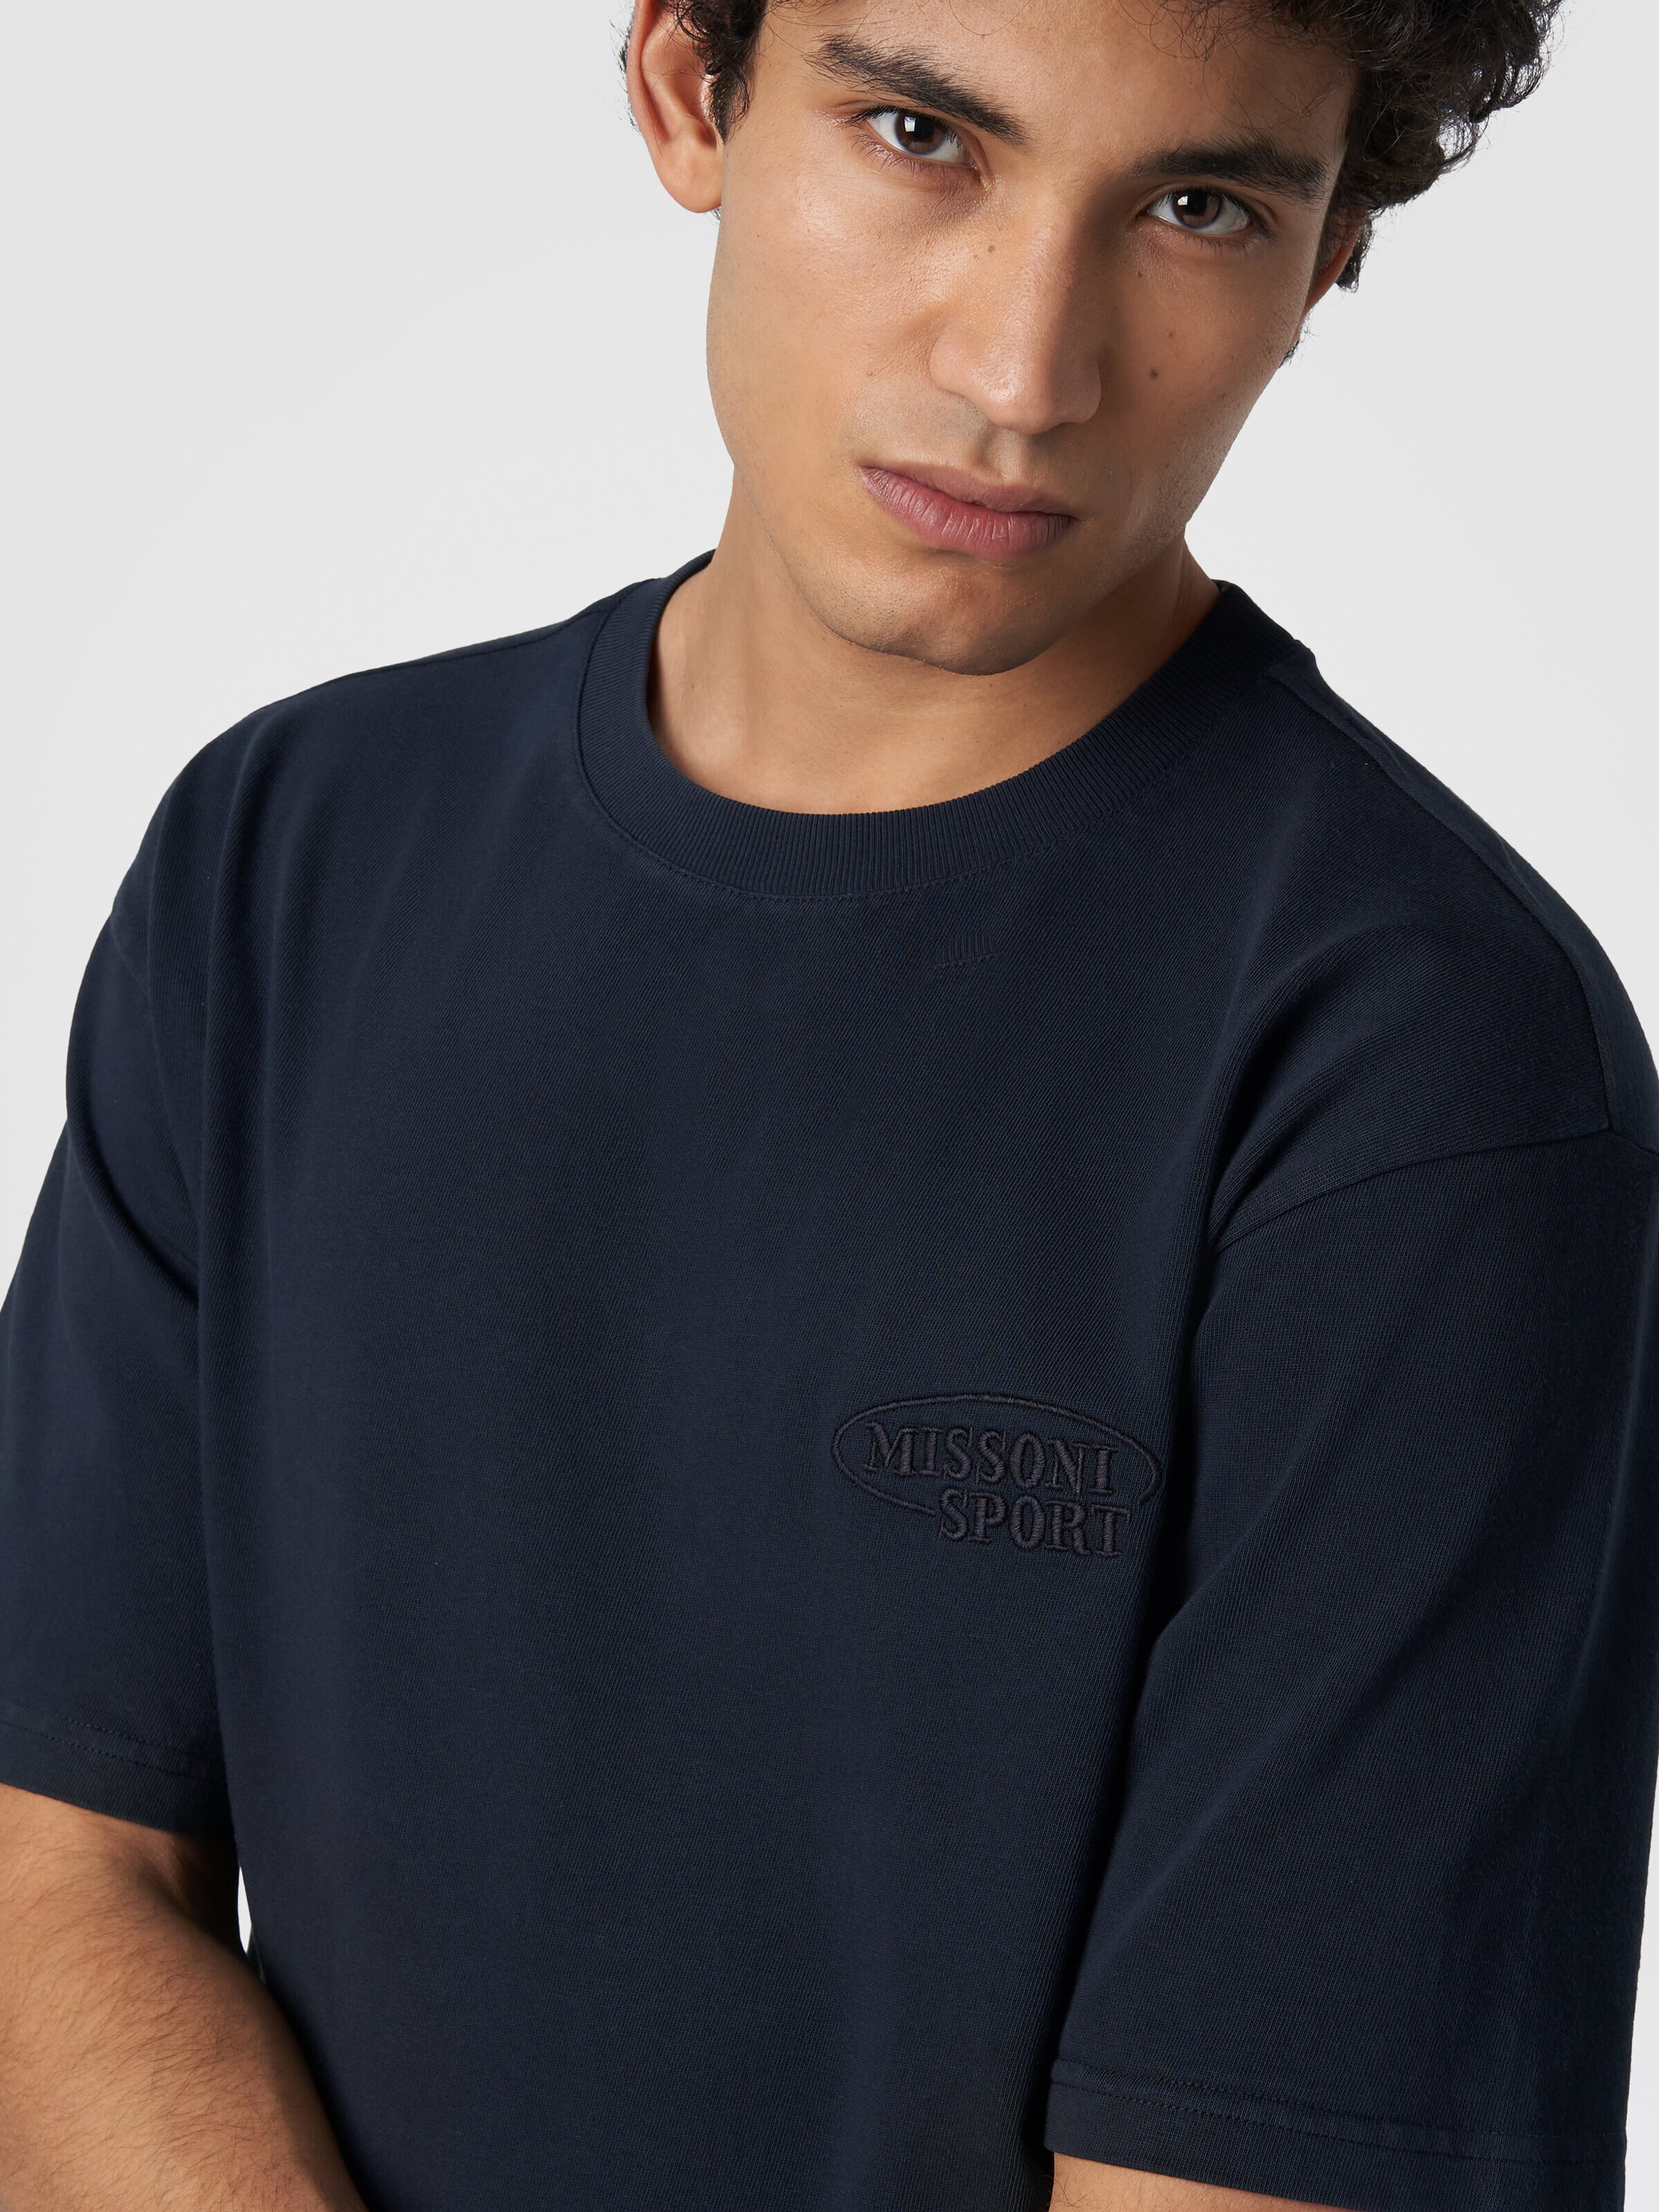 Camiseta de cuello redondo de algodón con logotipo, Azul Marino  - 4